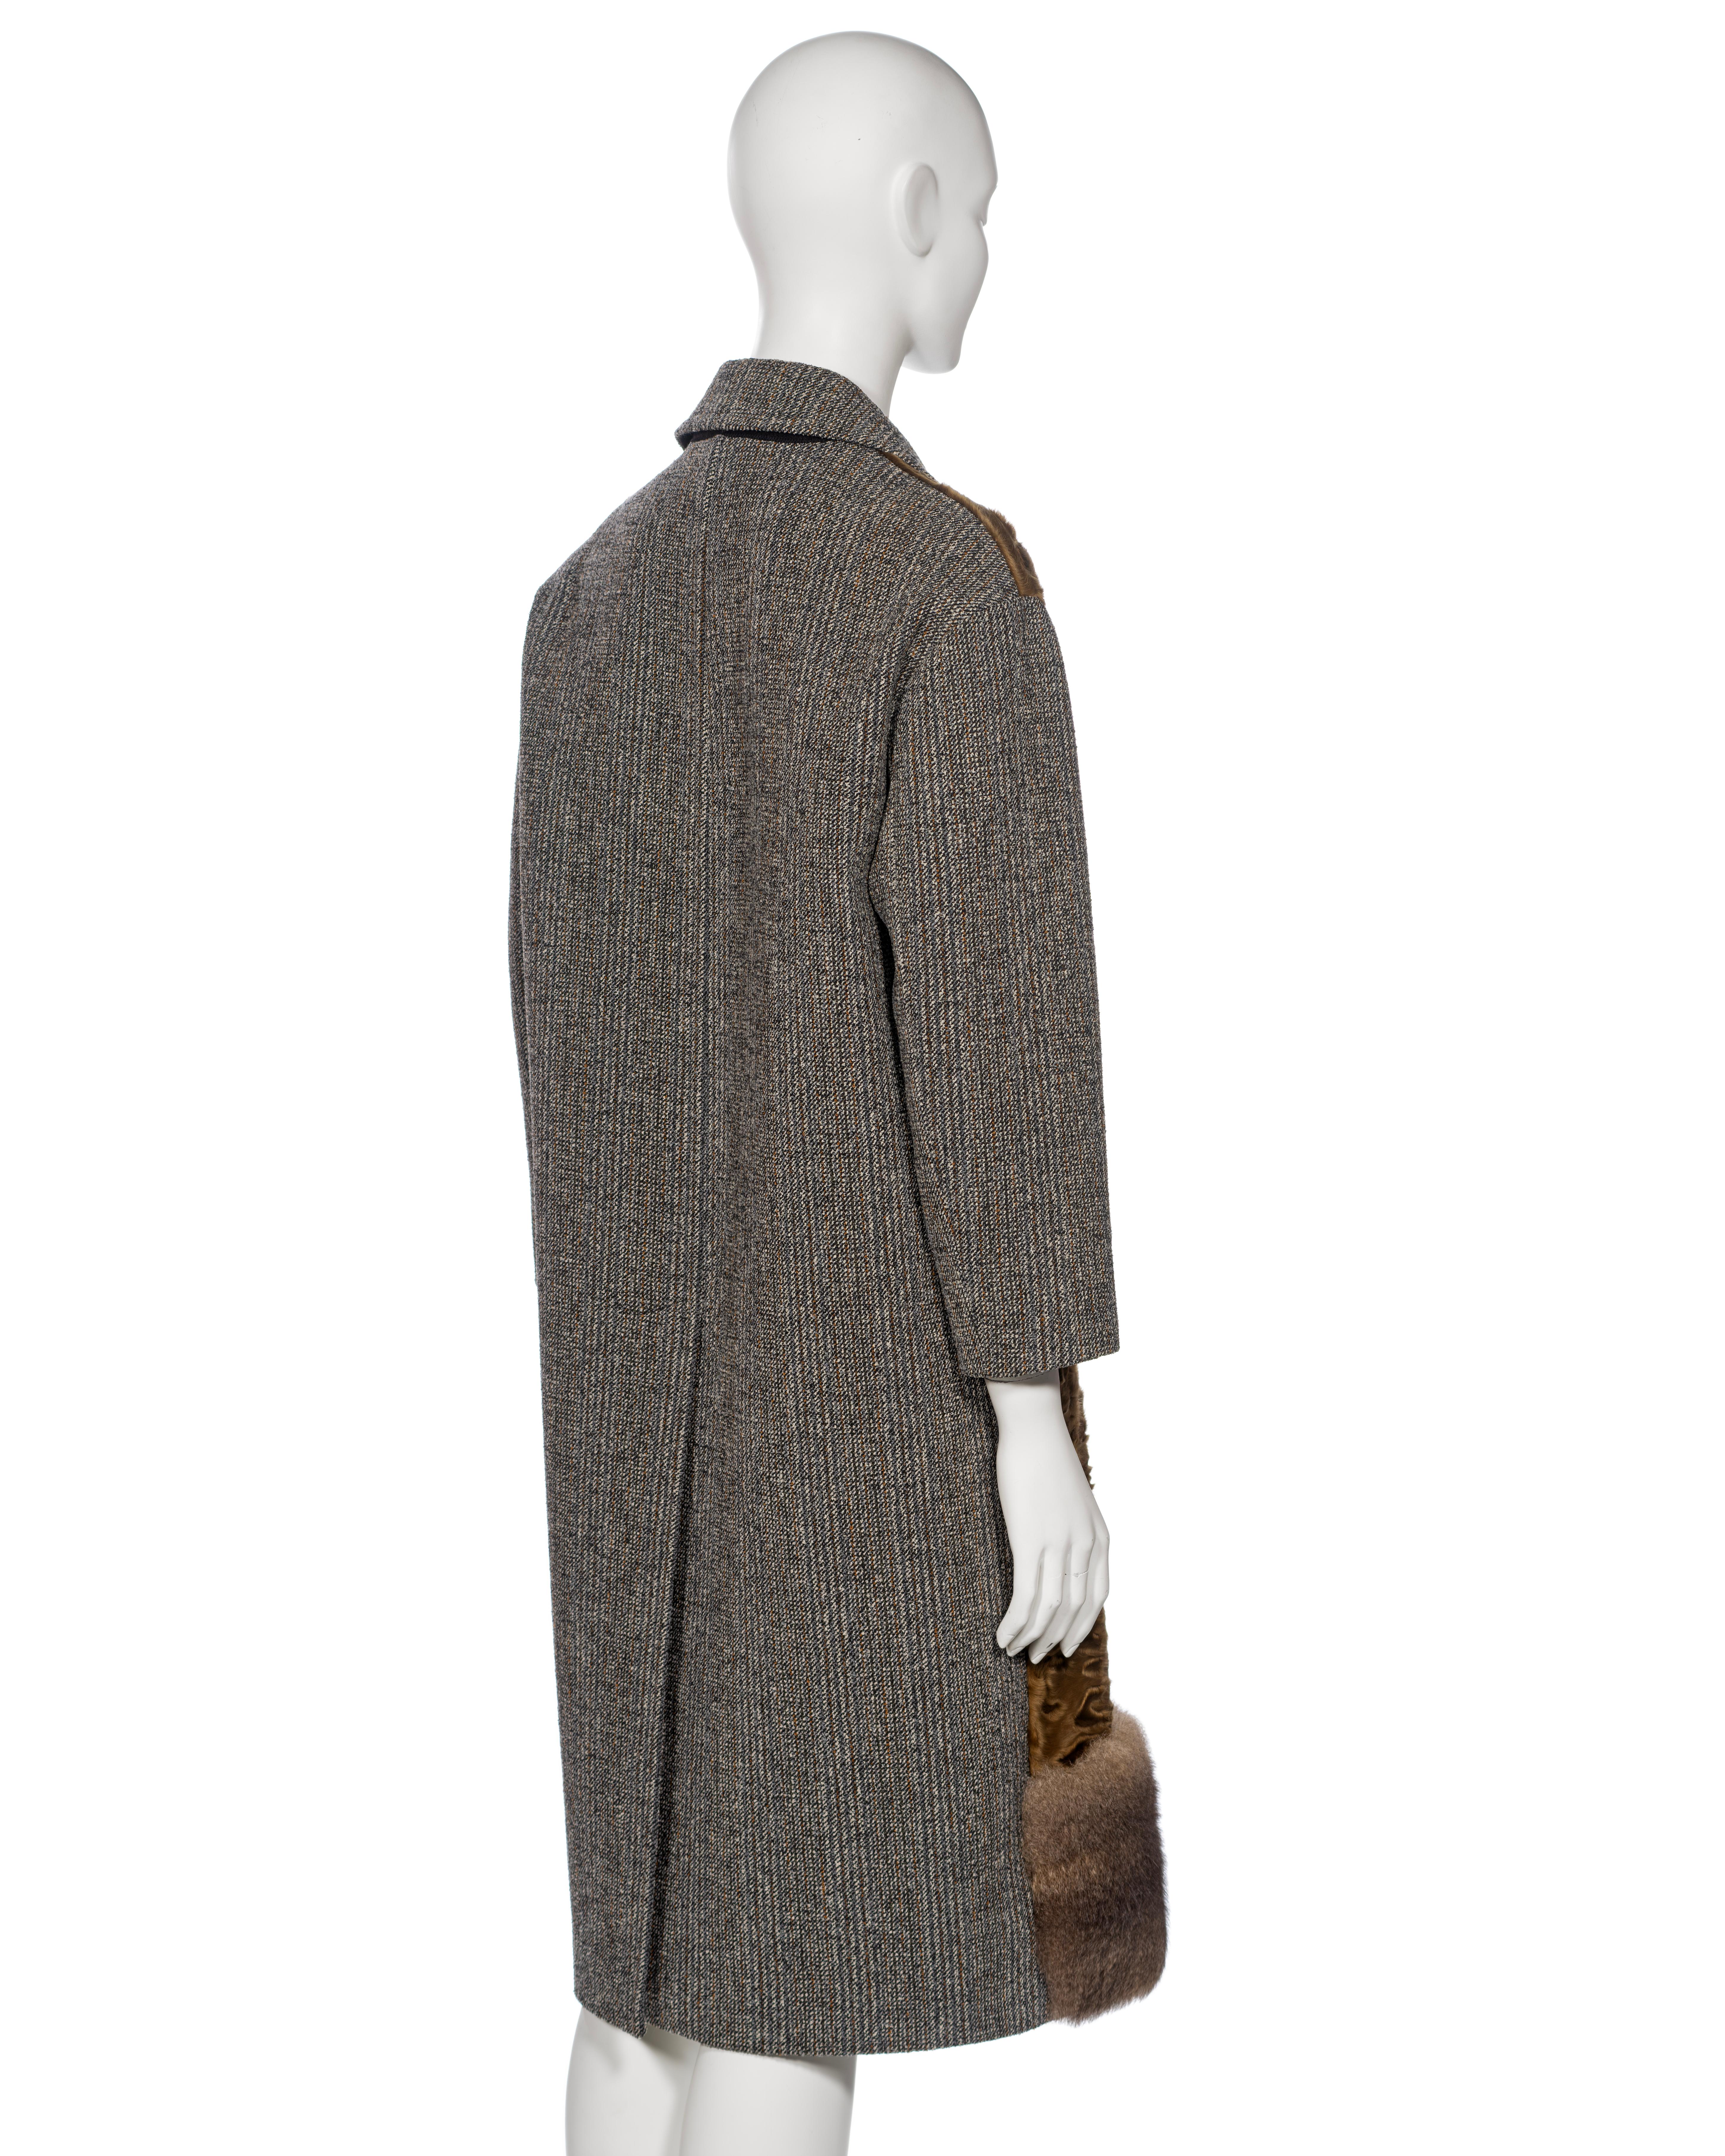 Prada by Miuccia Prada Grey and Brown Wool, Lamb and Possum Fur Coat, FW 2016 For Sale 7